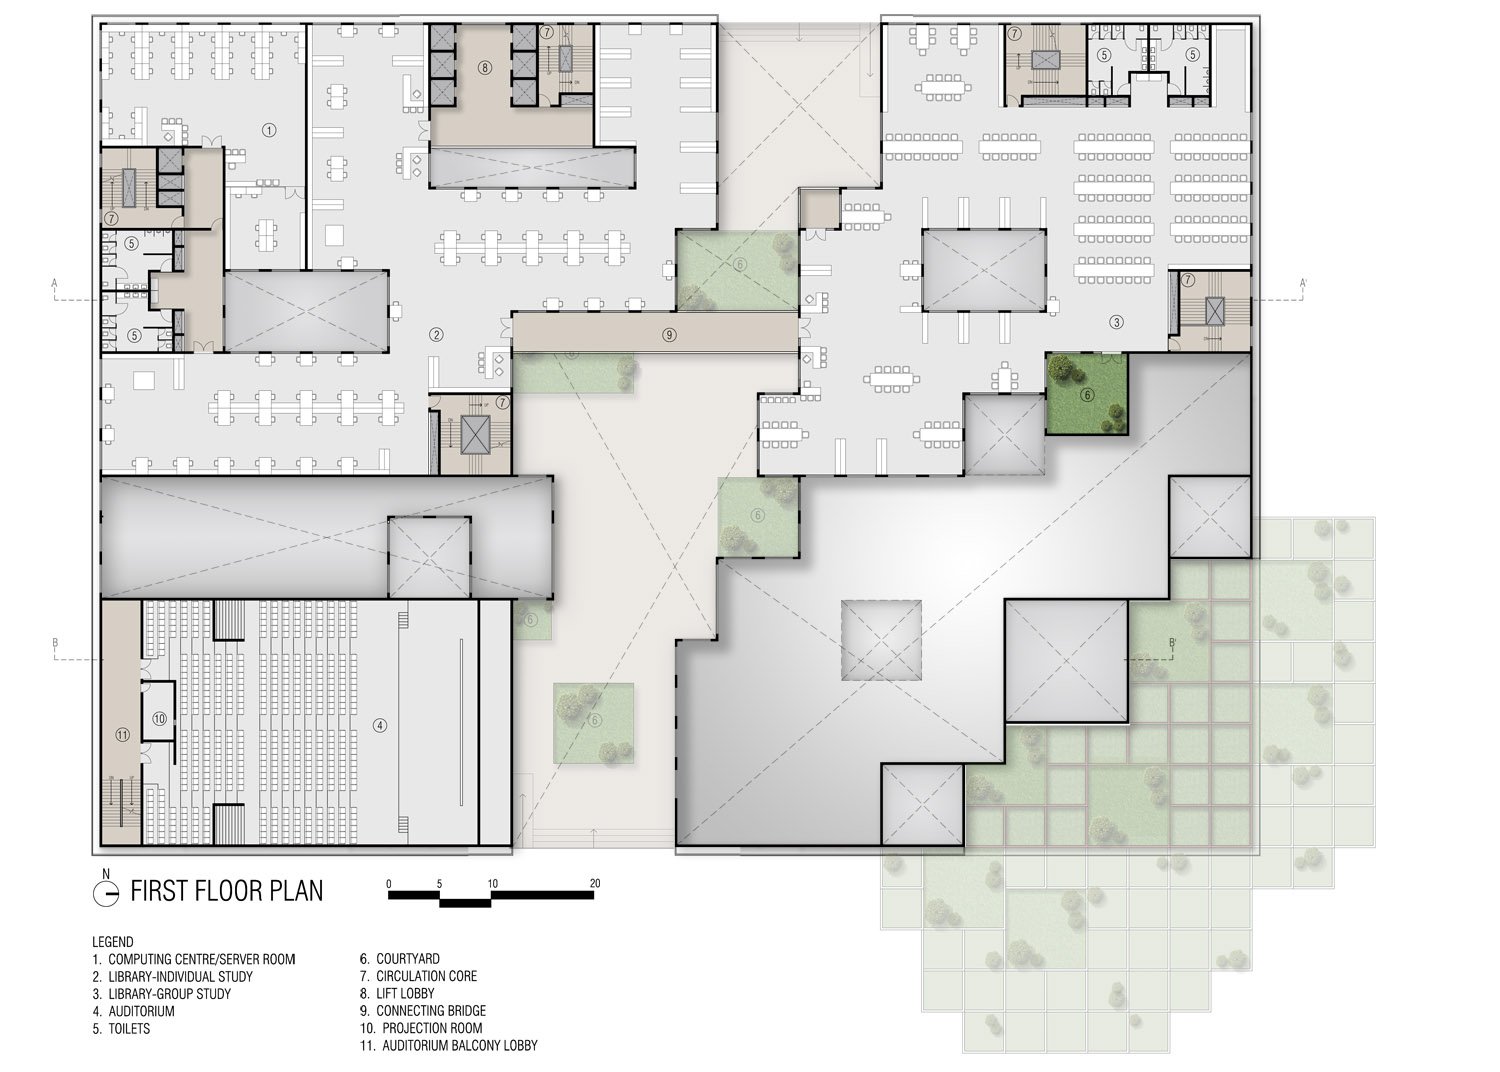 First floor plan | sanjay puri architects